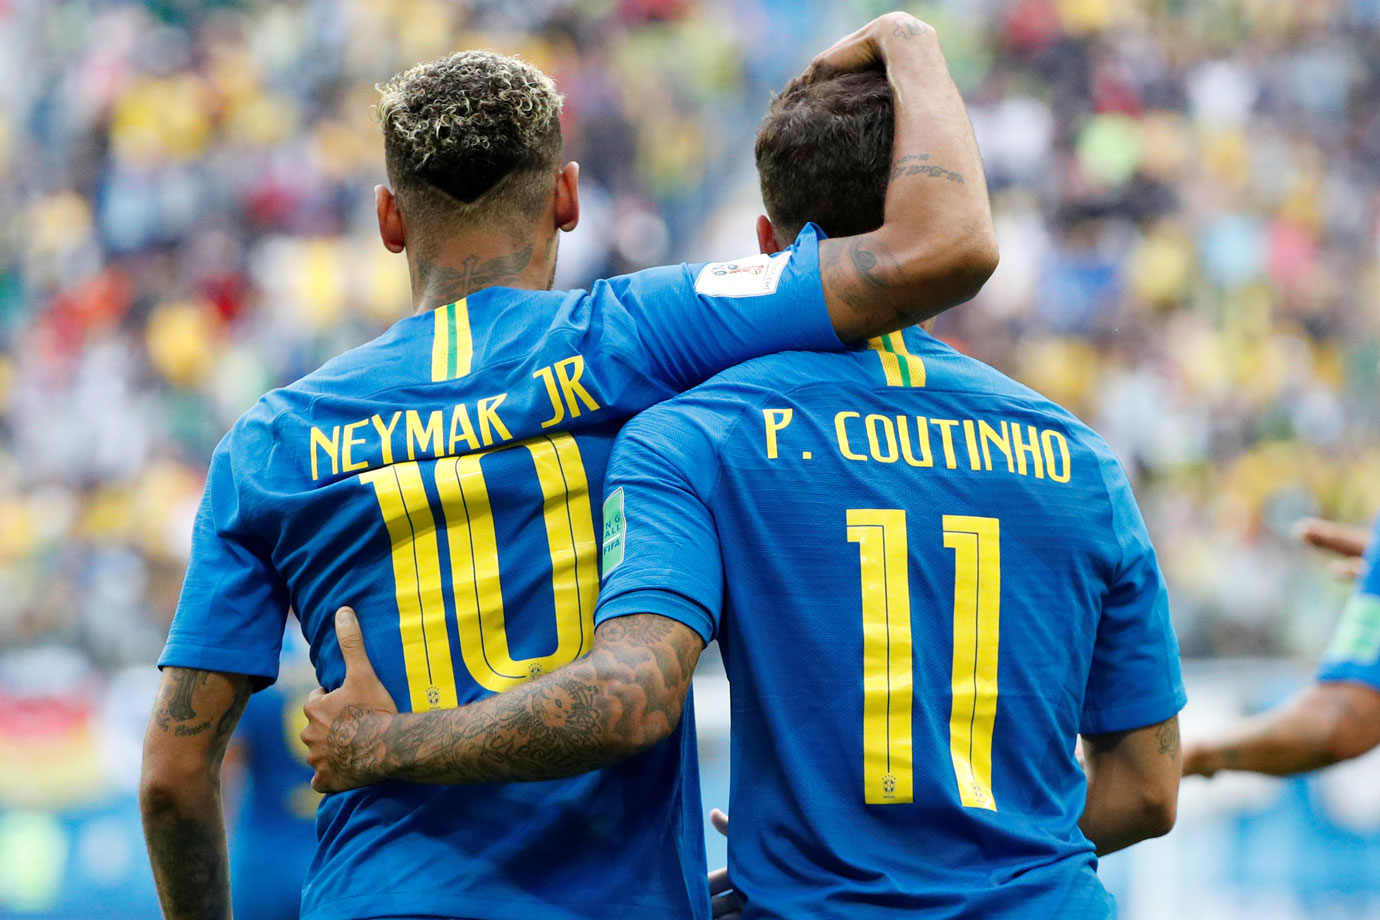 Neymar e Phillipe Coutinho, que jogarão a final da Champions League (Foto: Divulgação)